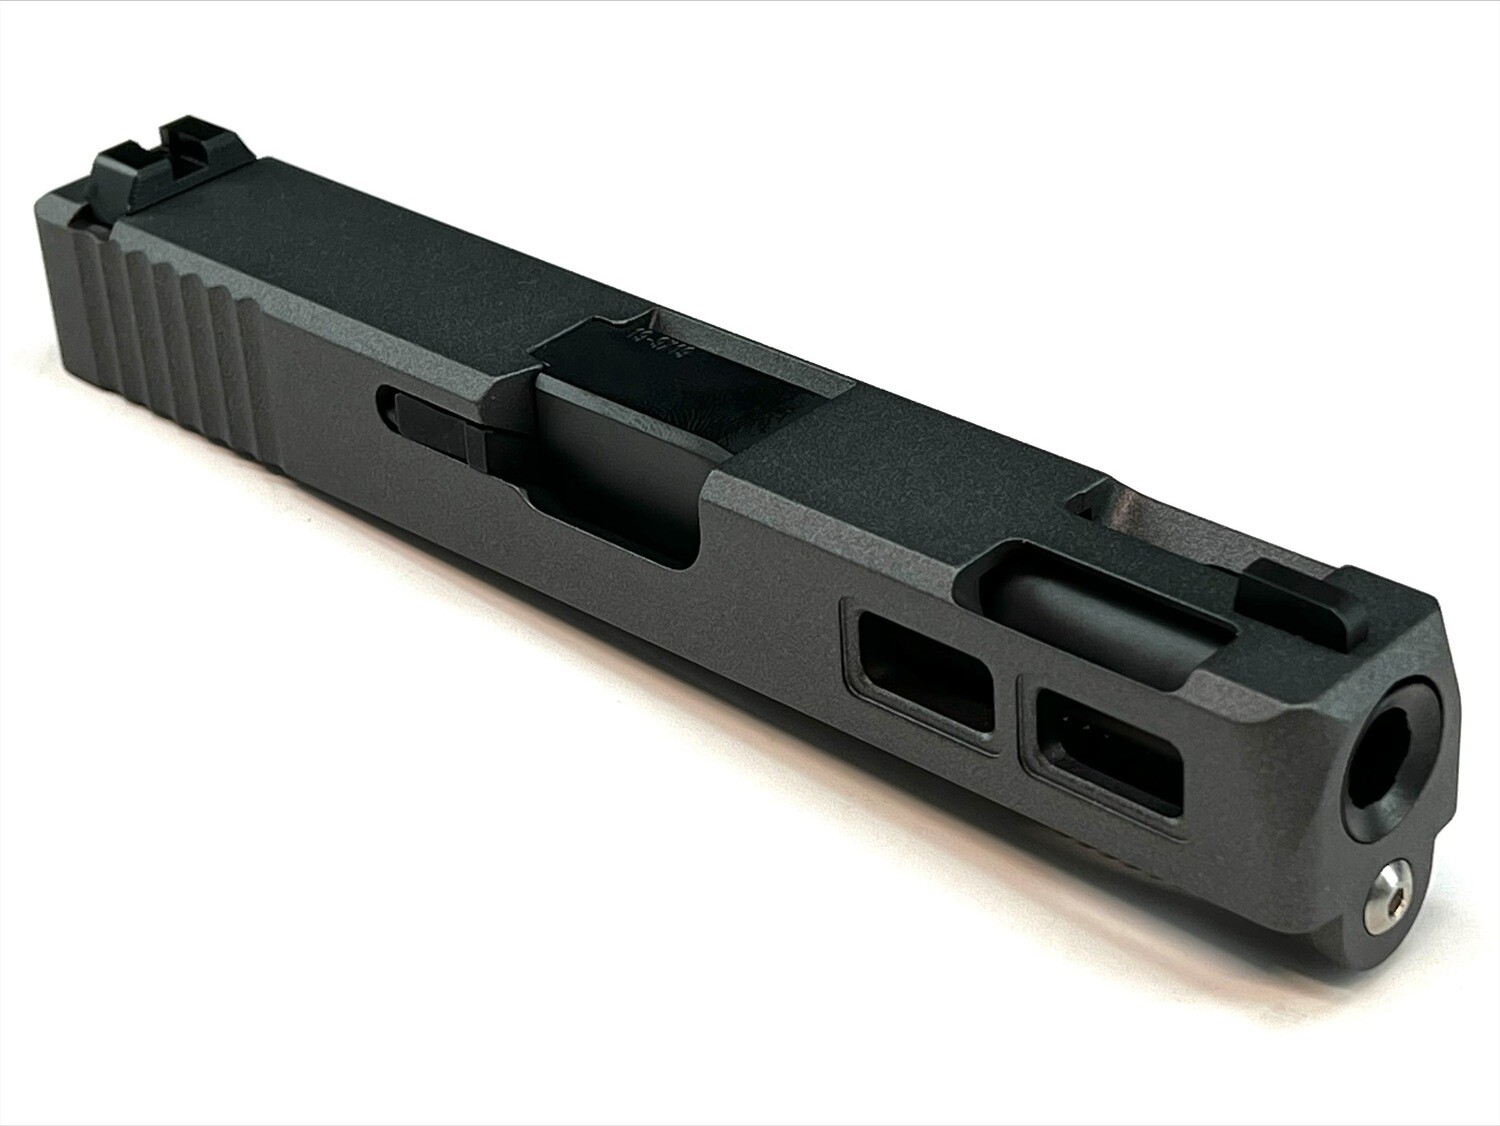 USPA Patriot G19 9mm Gen 3 Ported Windowed Slide - Color Black